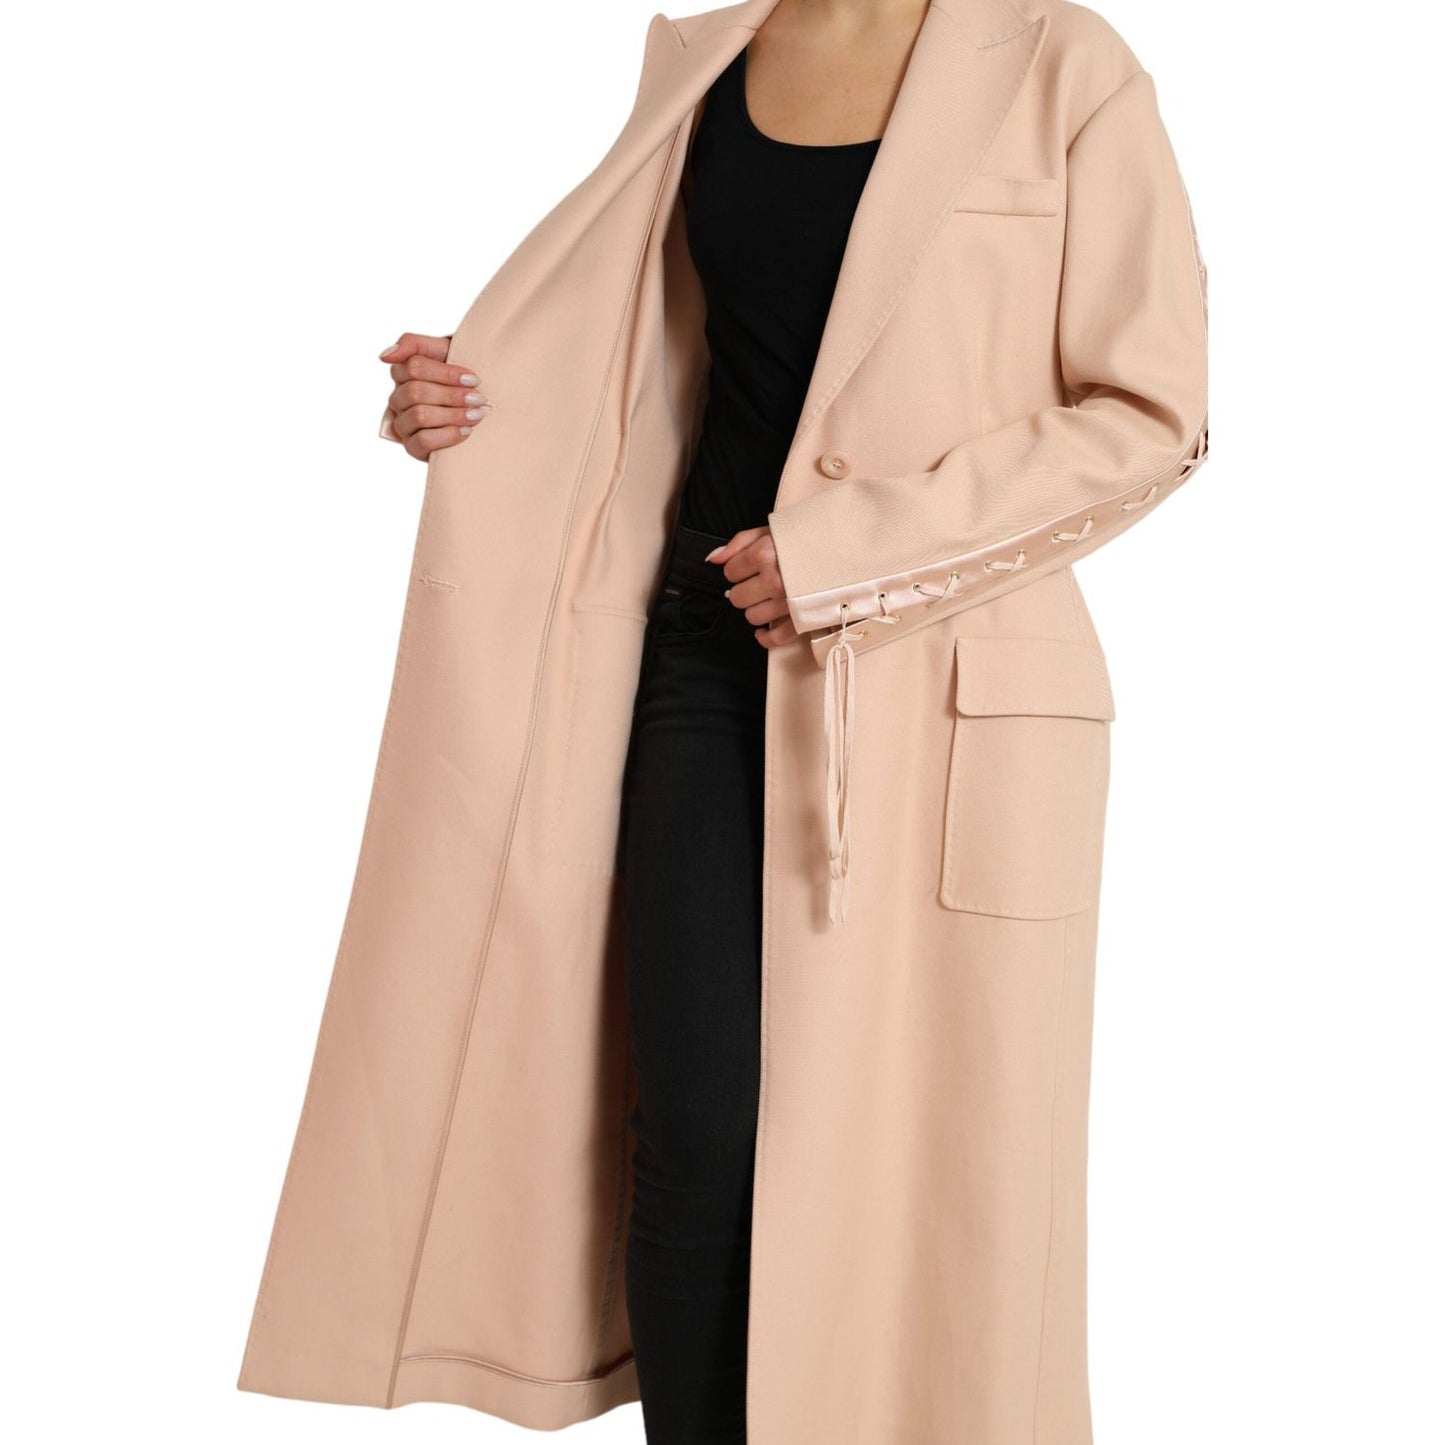 Dolce & Gabbana Elegant Beige Single-Breasted Trench Coat beige-cotton-single-breasted-long-coat-jacket 465A9170-BG-scaled-057136f3-cd9.jpg